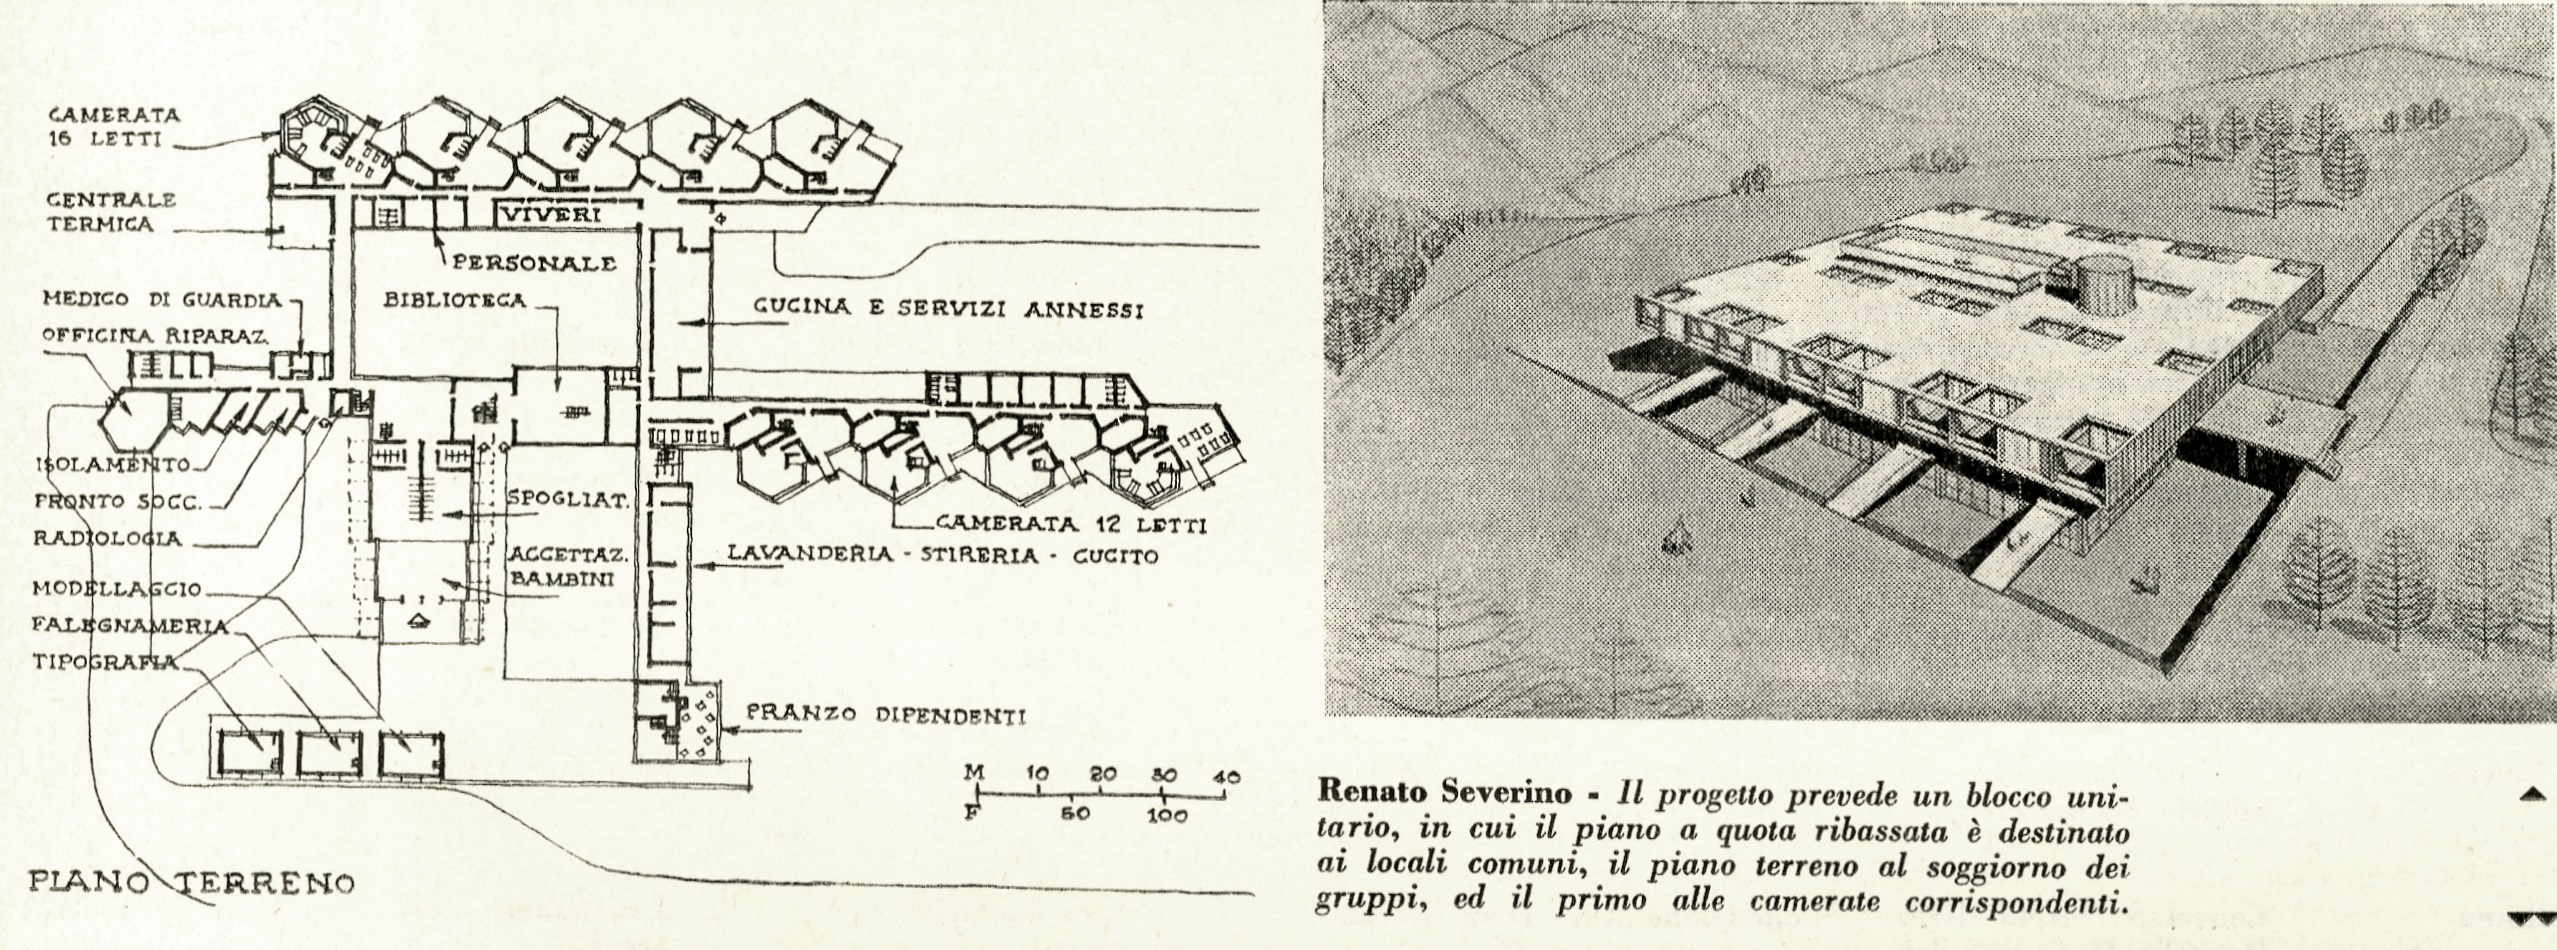 Fig. 4. Progetto finalista di Renato Severino al Concorso per il soggiorno montano Cornigliano, Val di Susa, 1960 [Concorso per un soggiorno 1960].